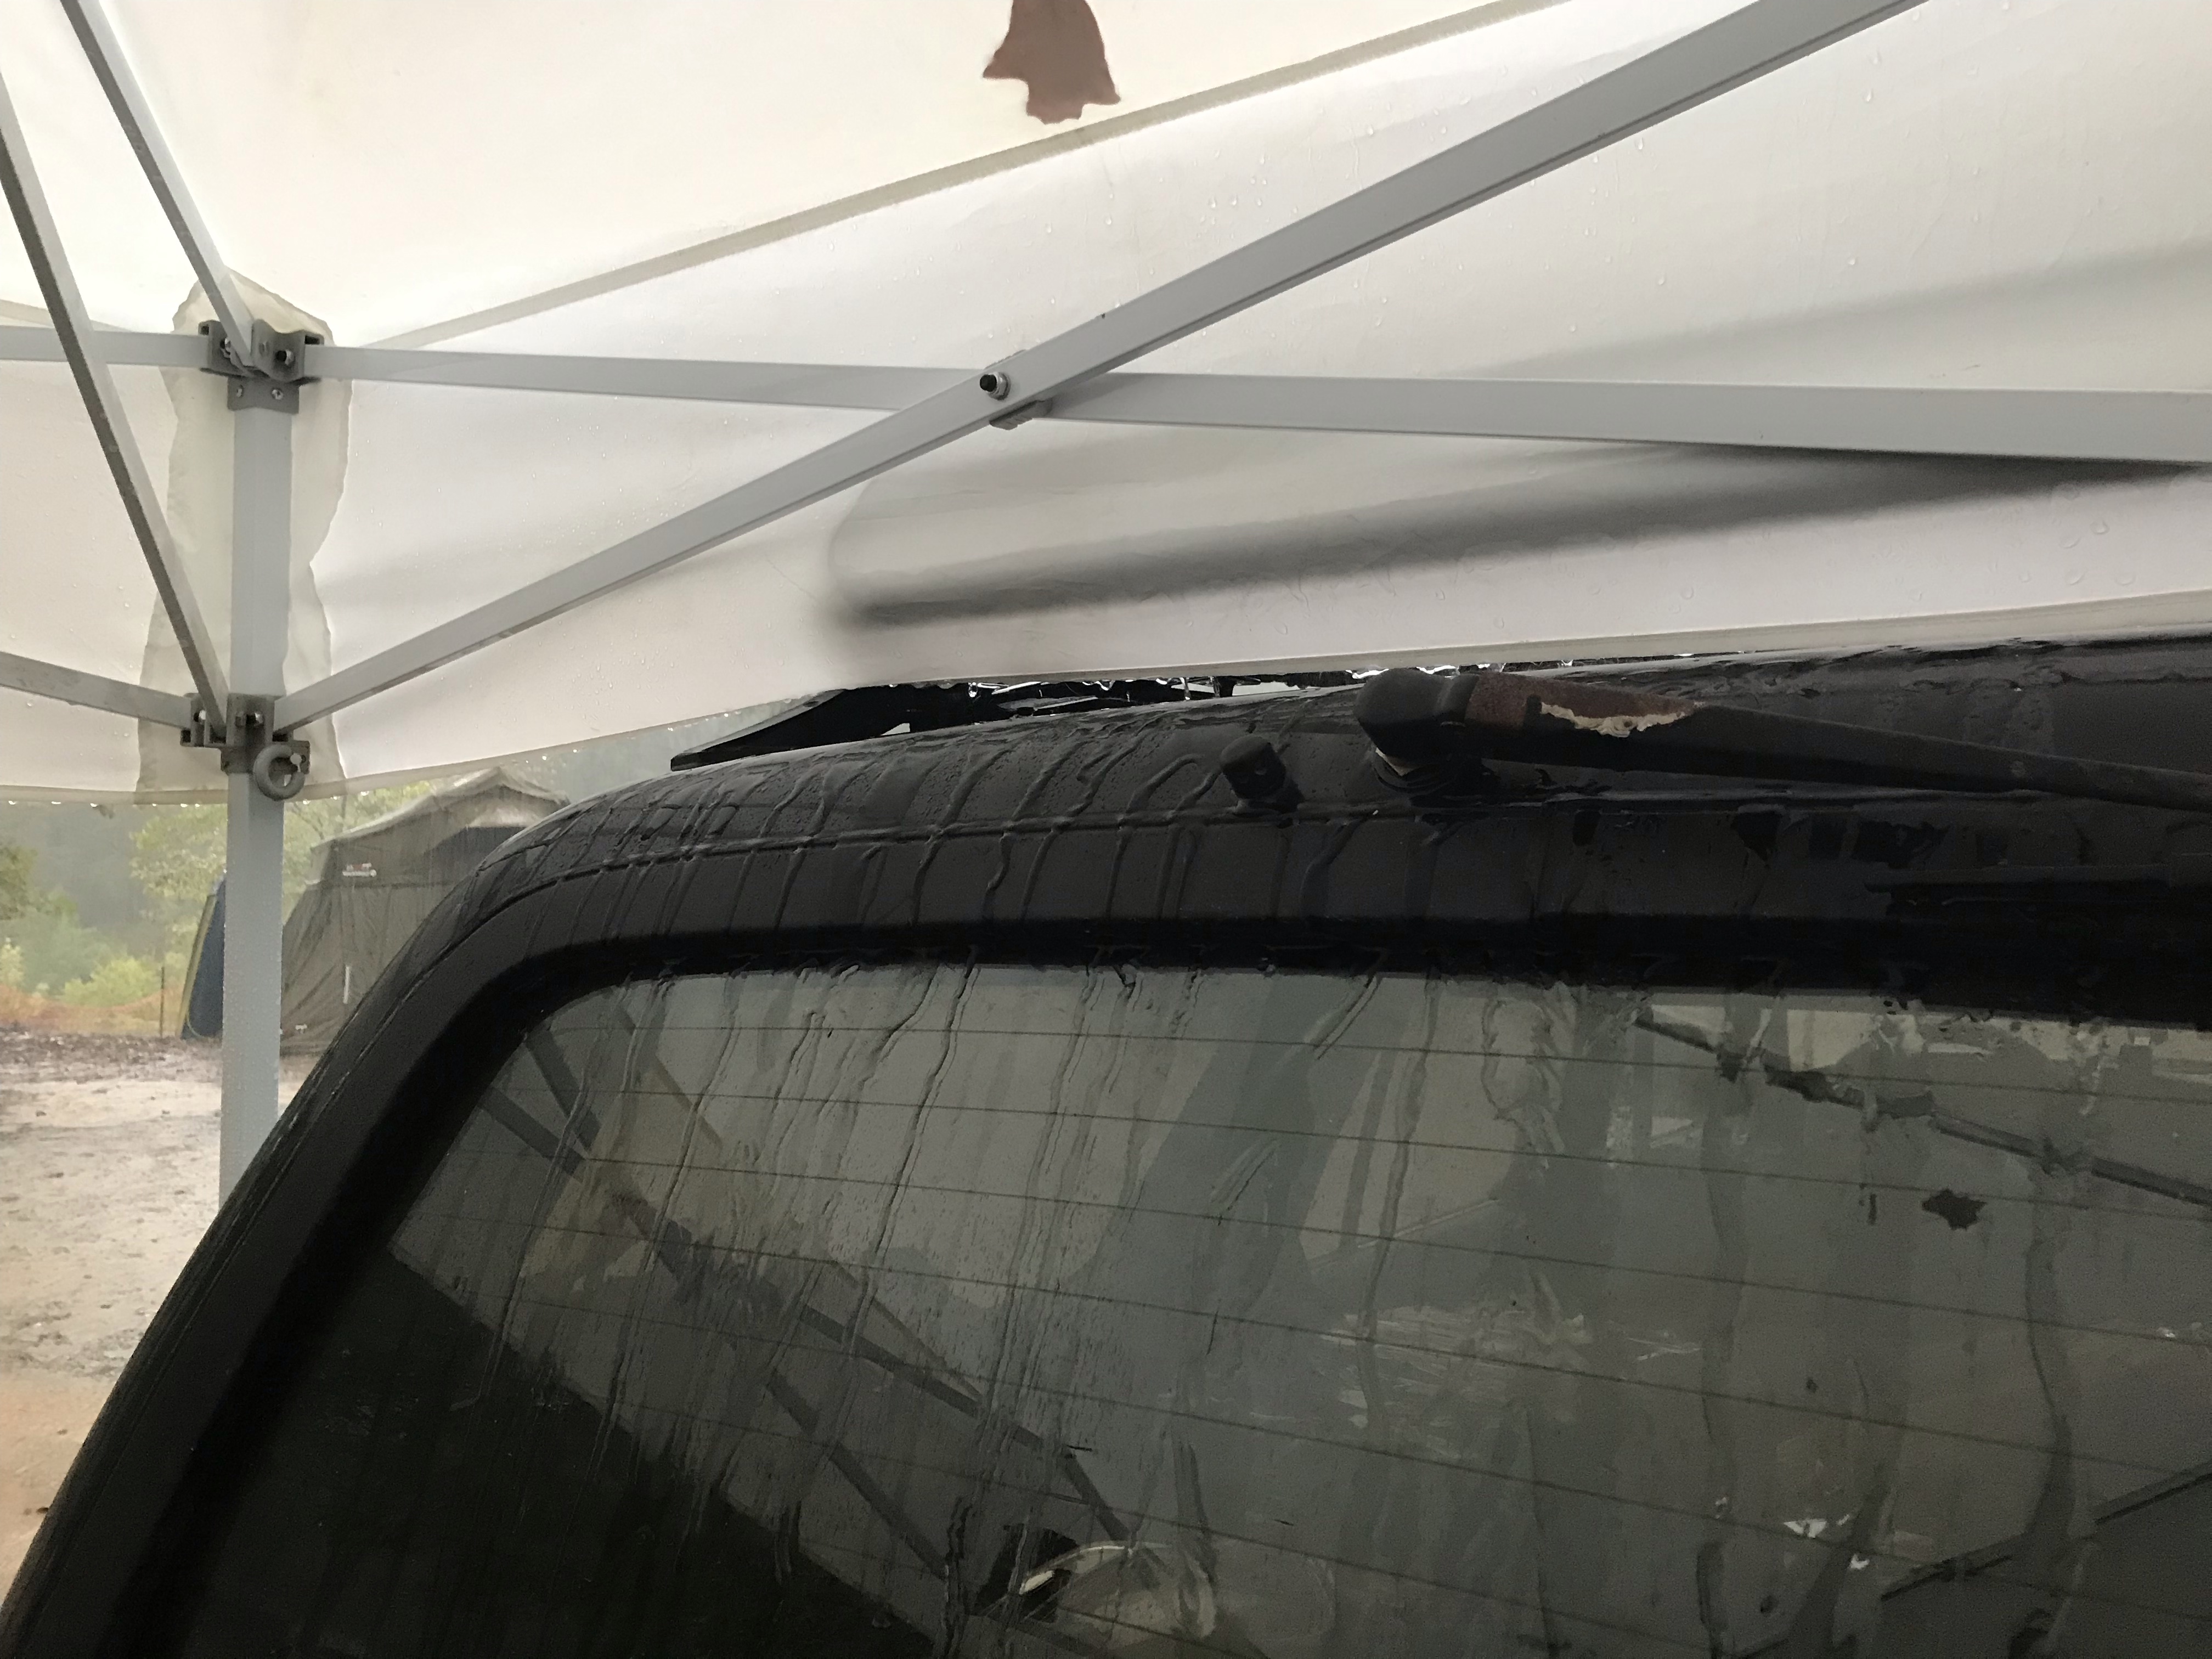 Rear window under cover with rain streaks